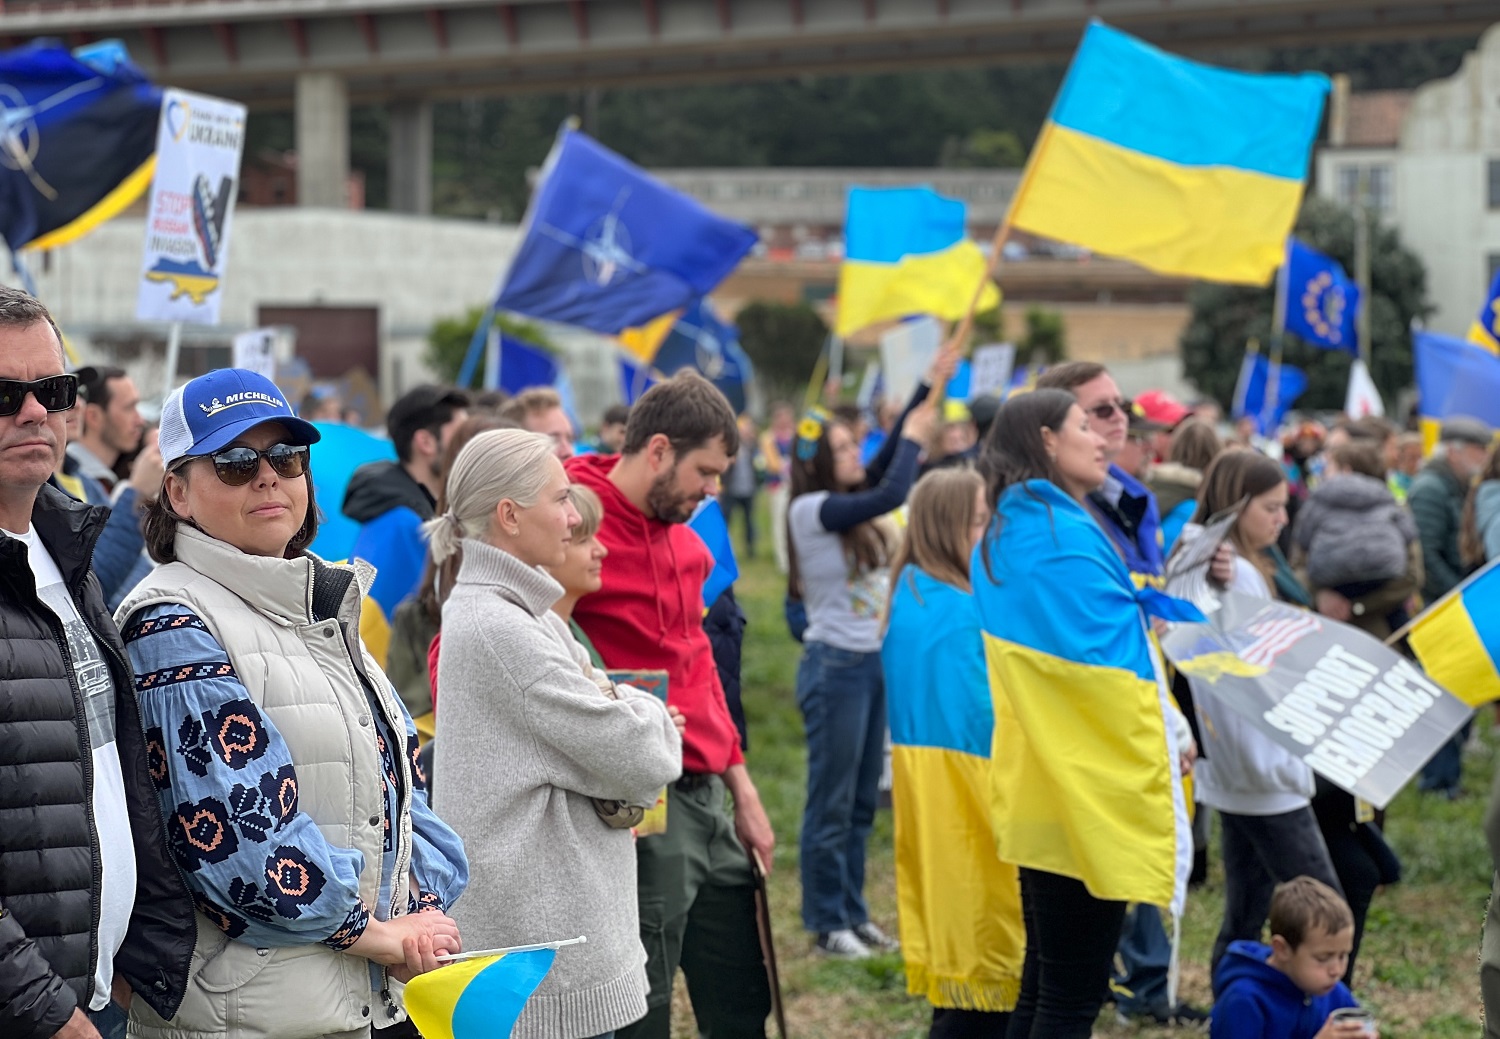 ES laikinai netaikys importo muitų visiems produktams iš Ukrainos